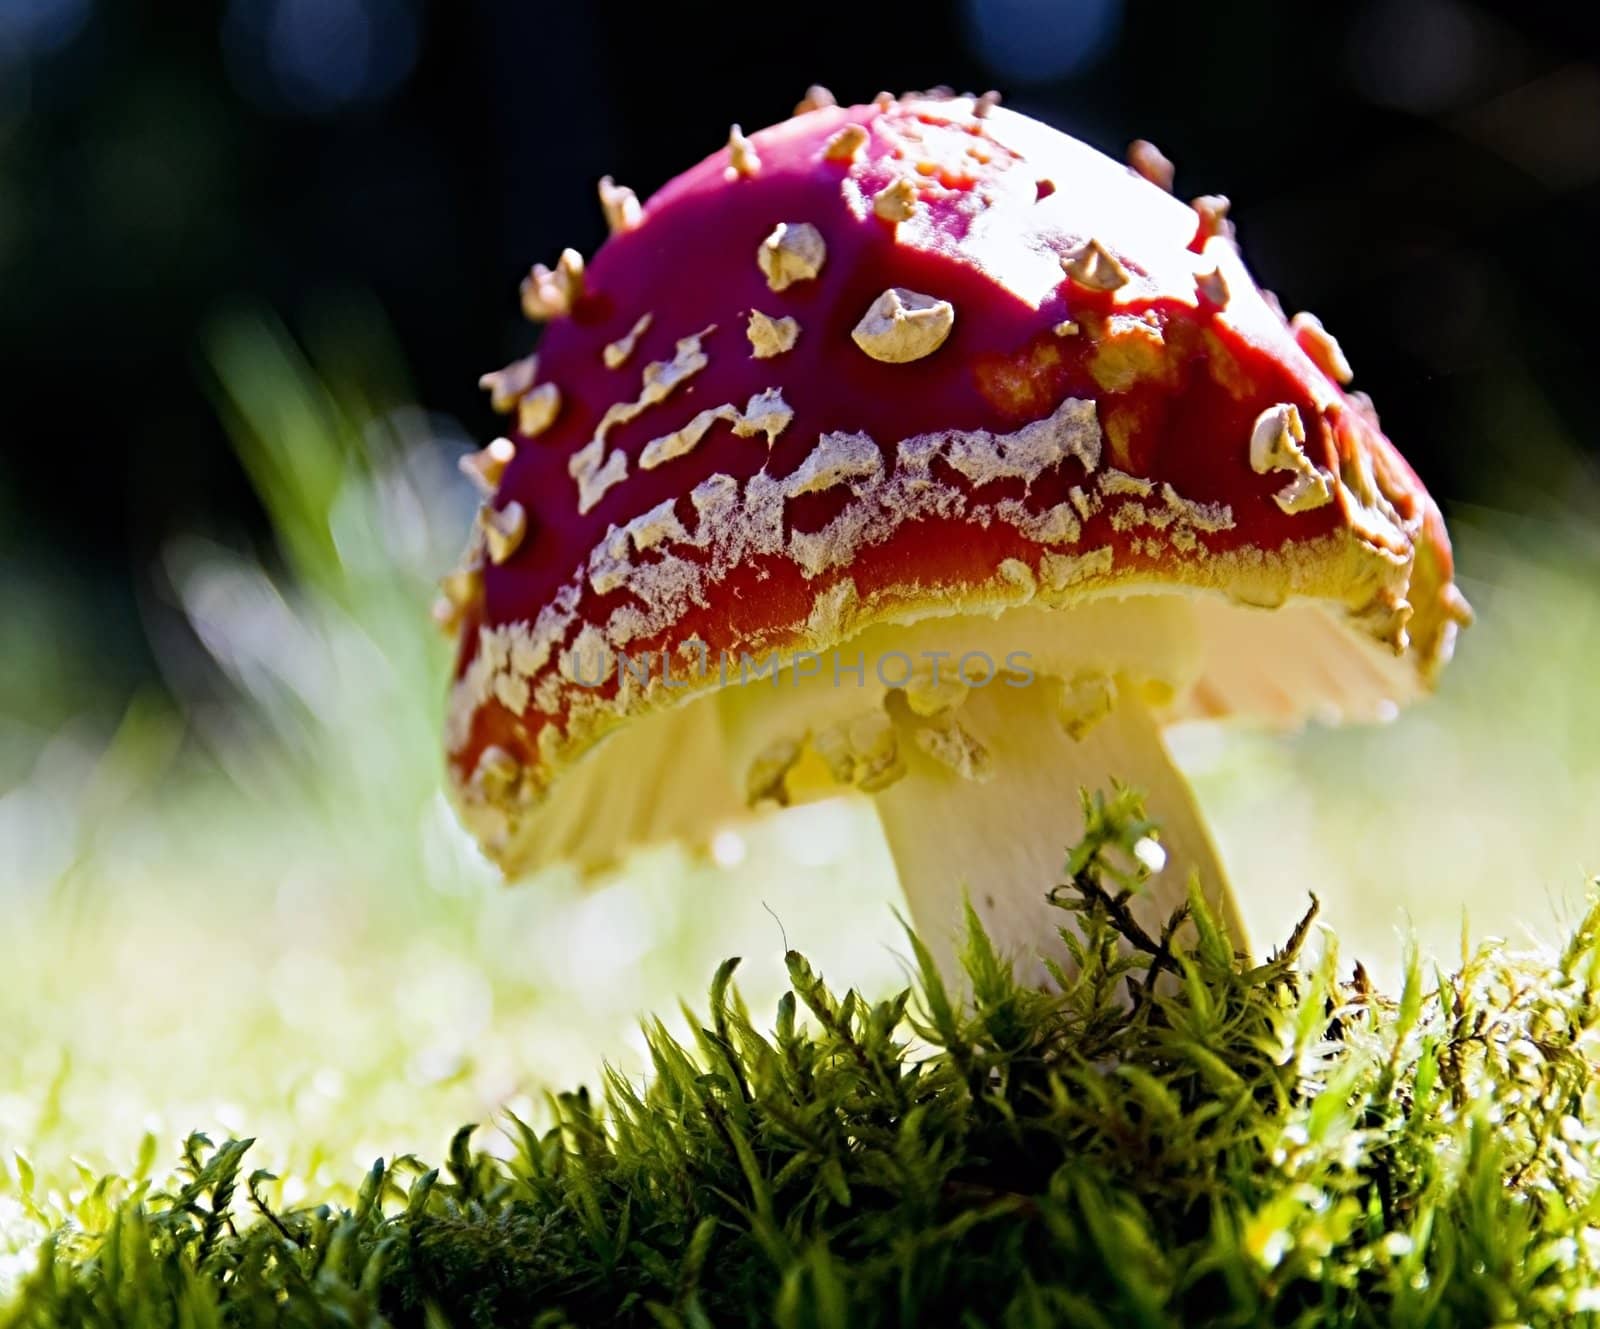 Mushroom by baggiovara